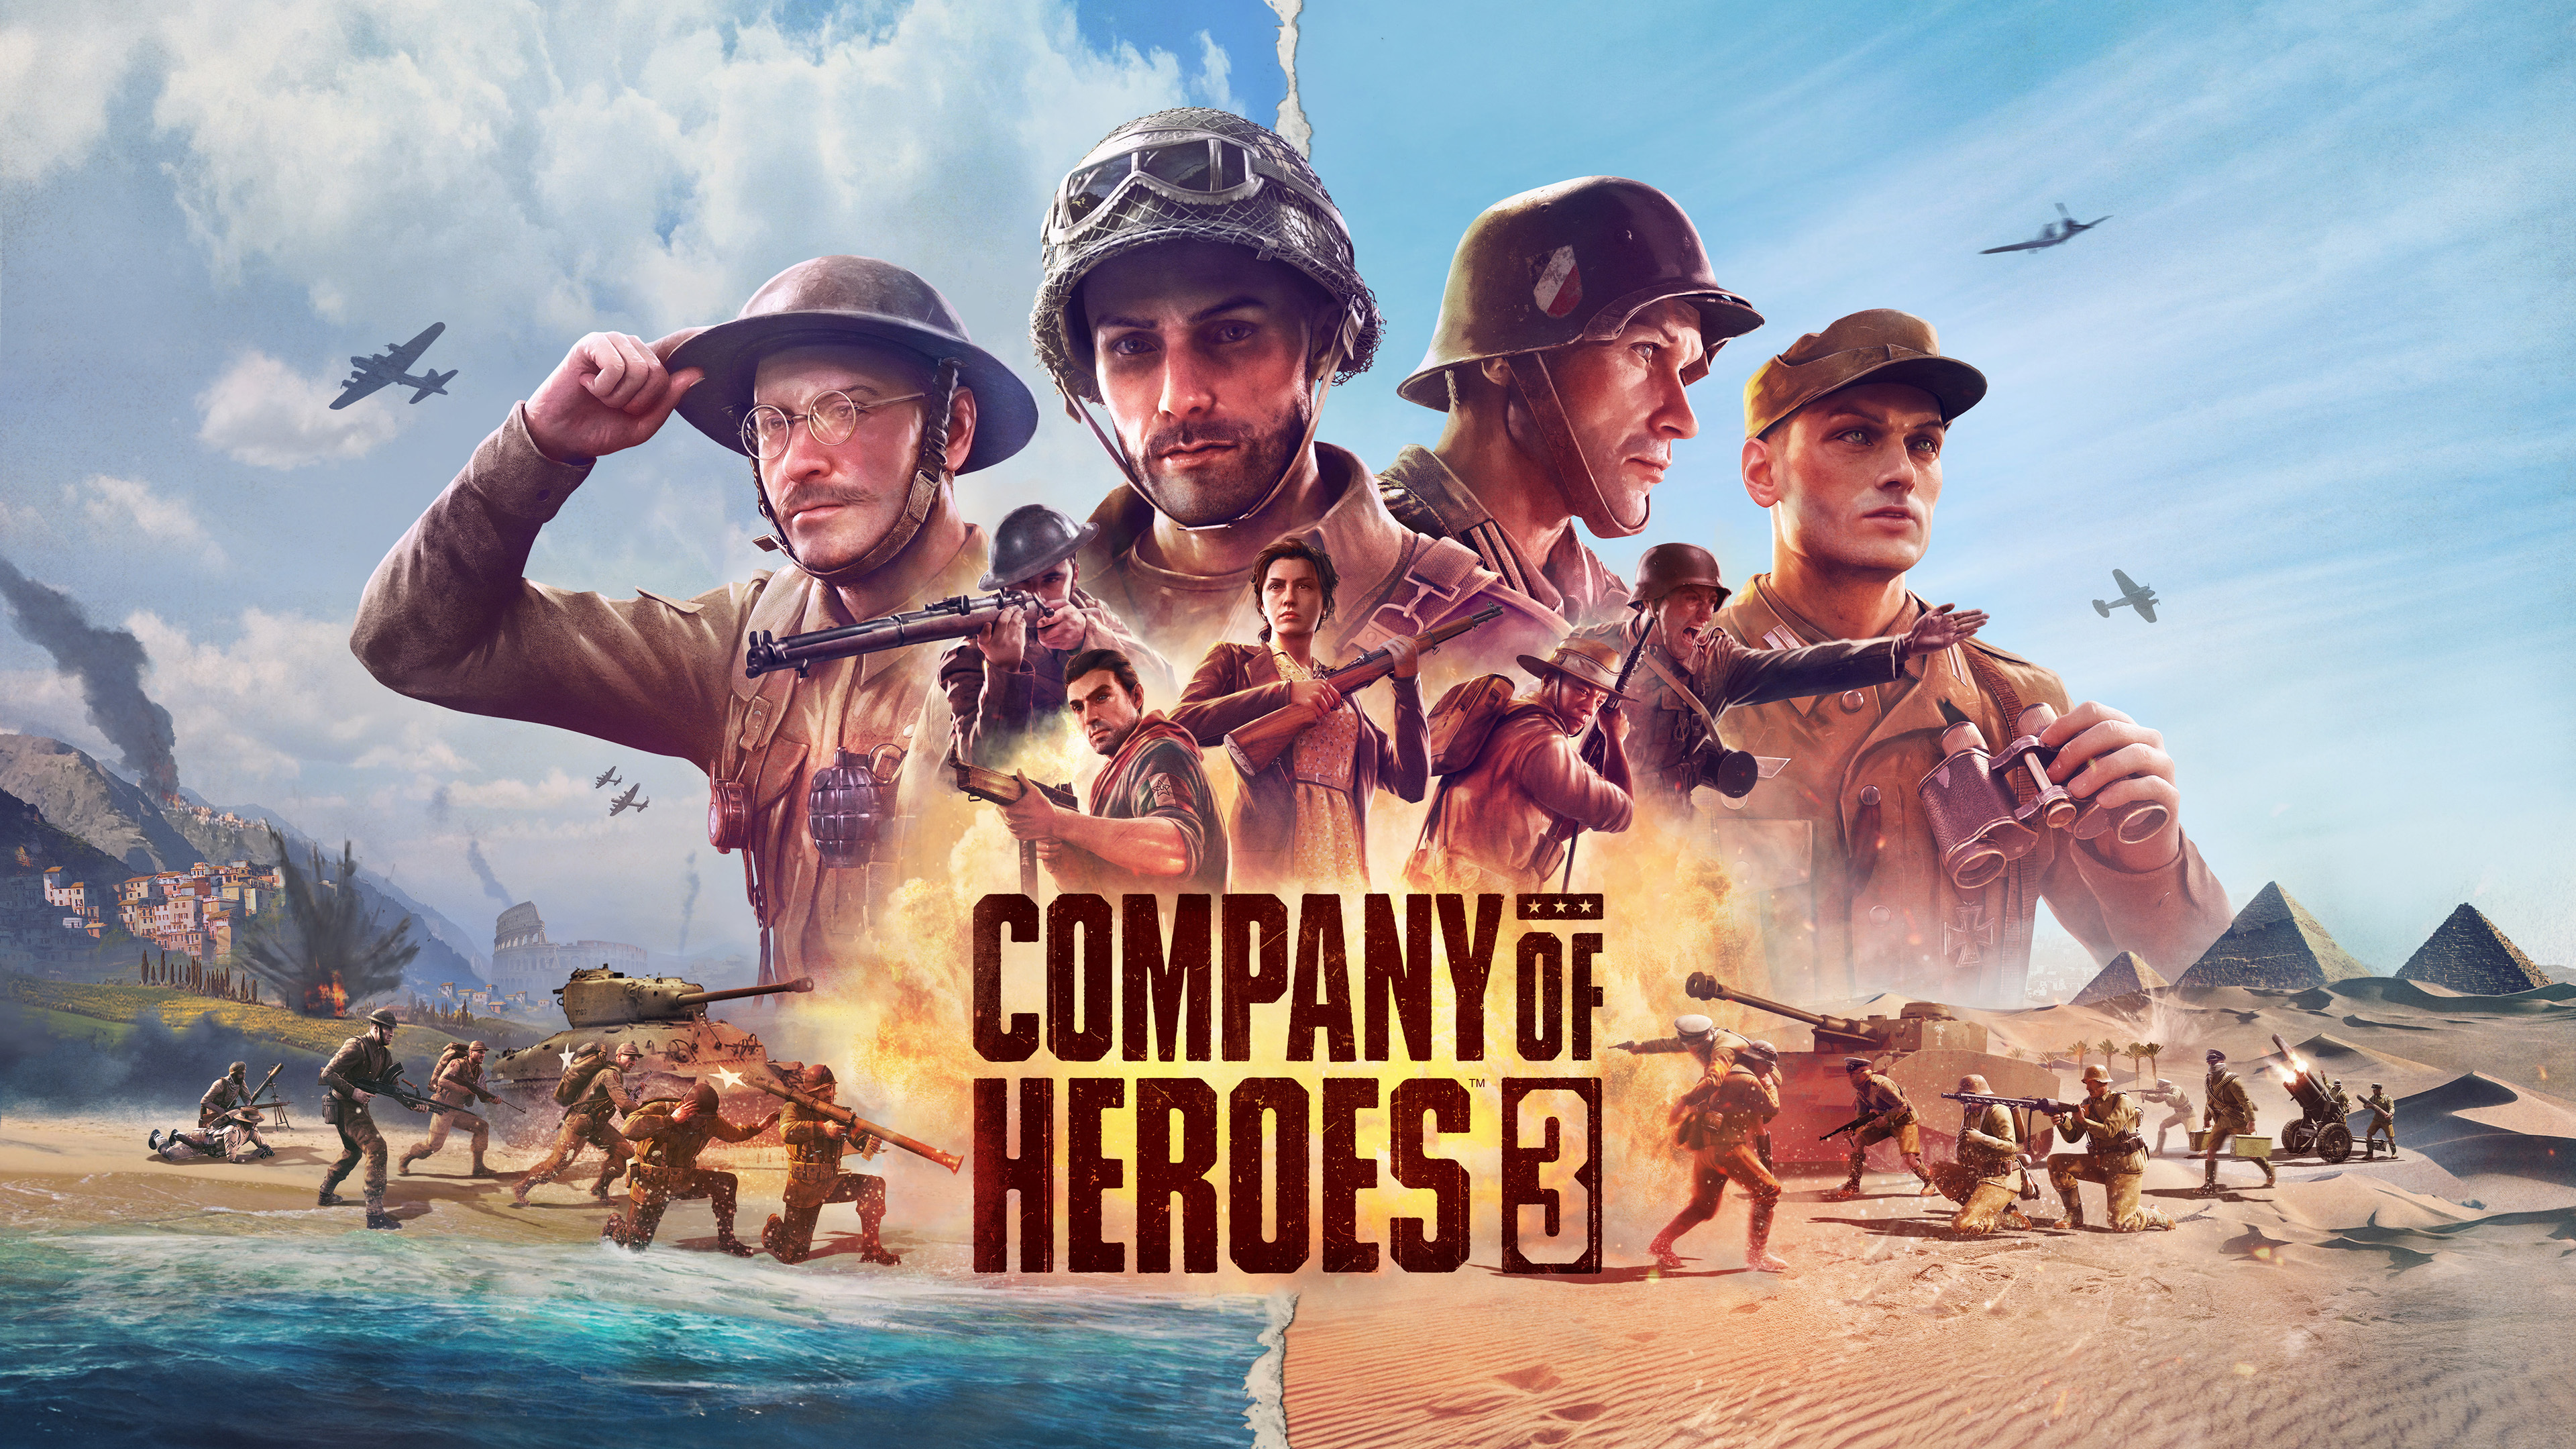 Company of Heroes 3 - Recensione PC del terzo capitolo del celeberrimo RTS